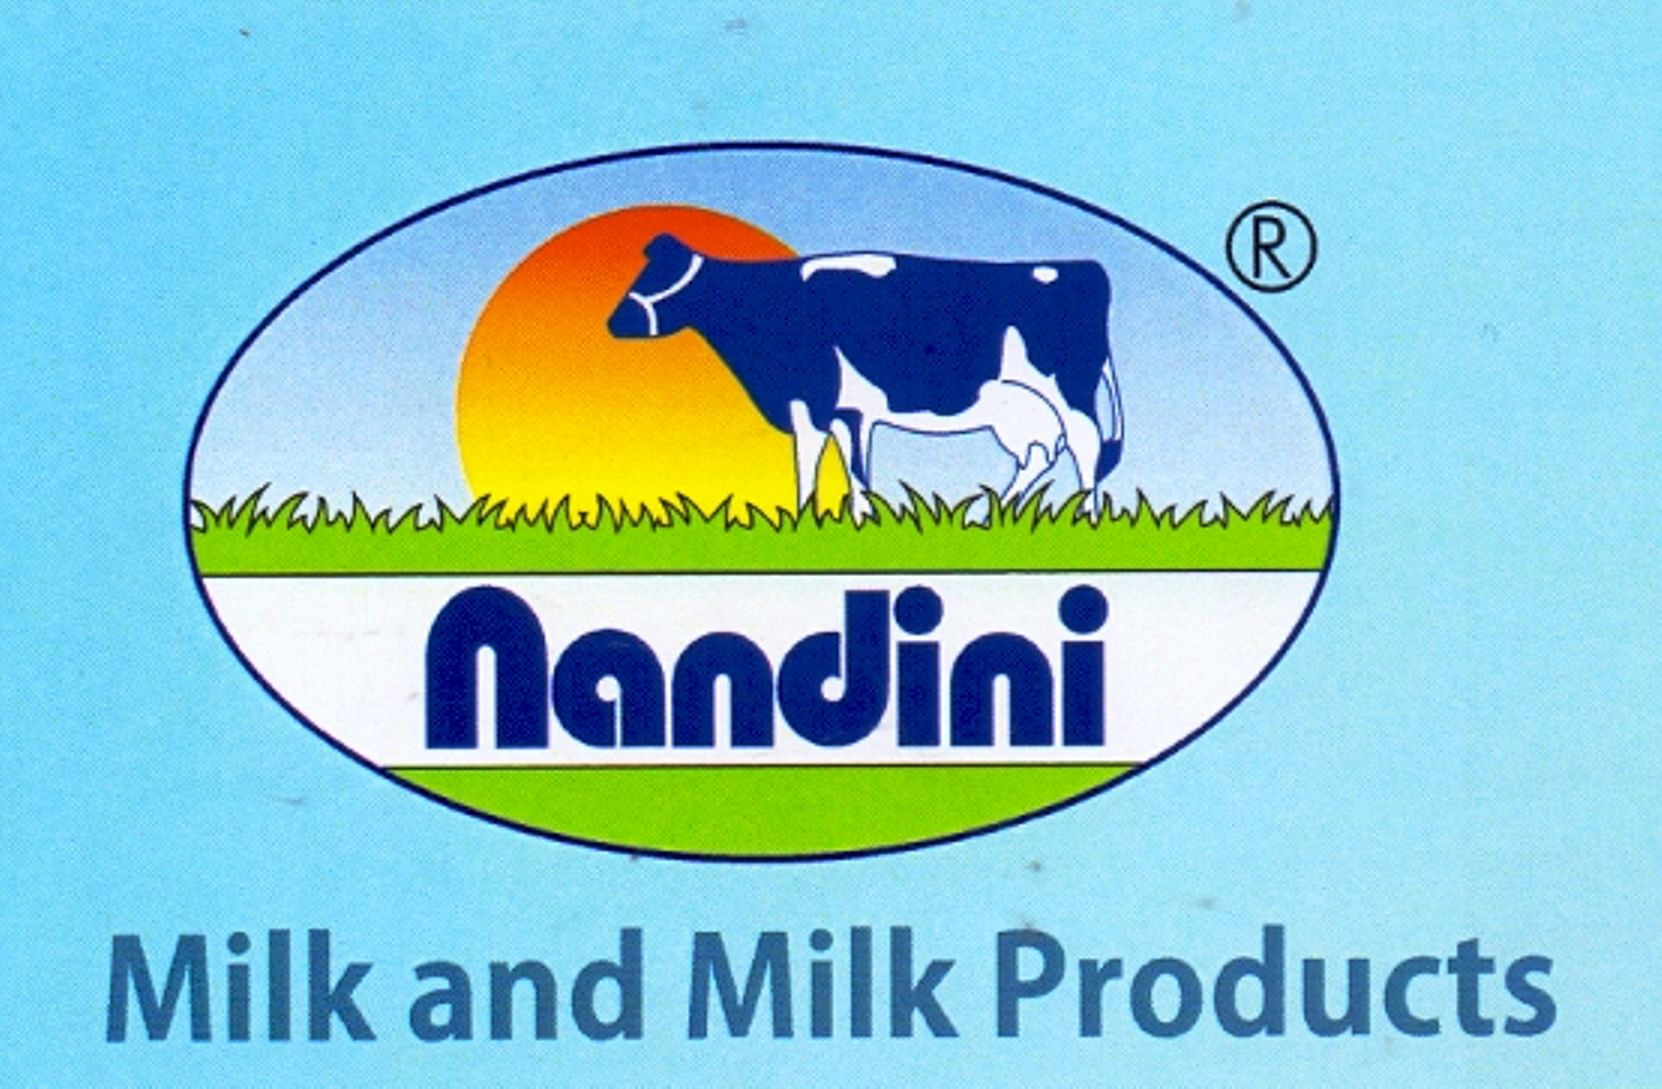 Nandani logo. (DH File Photo)